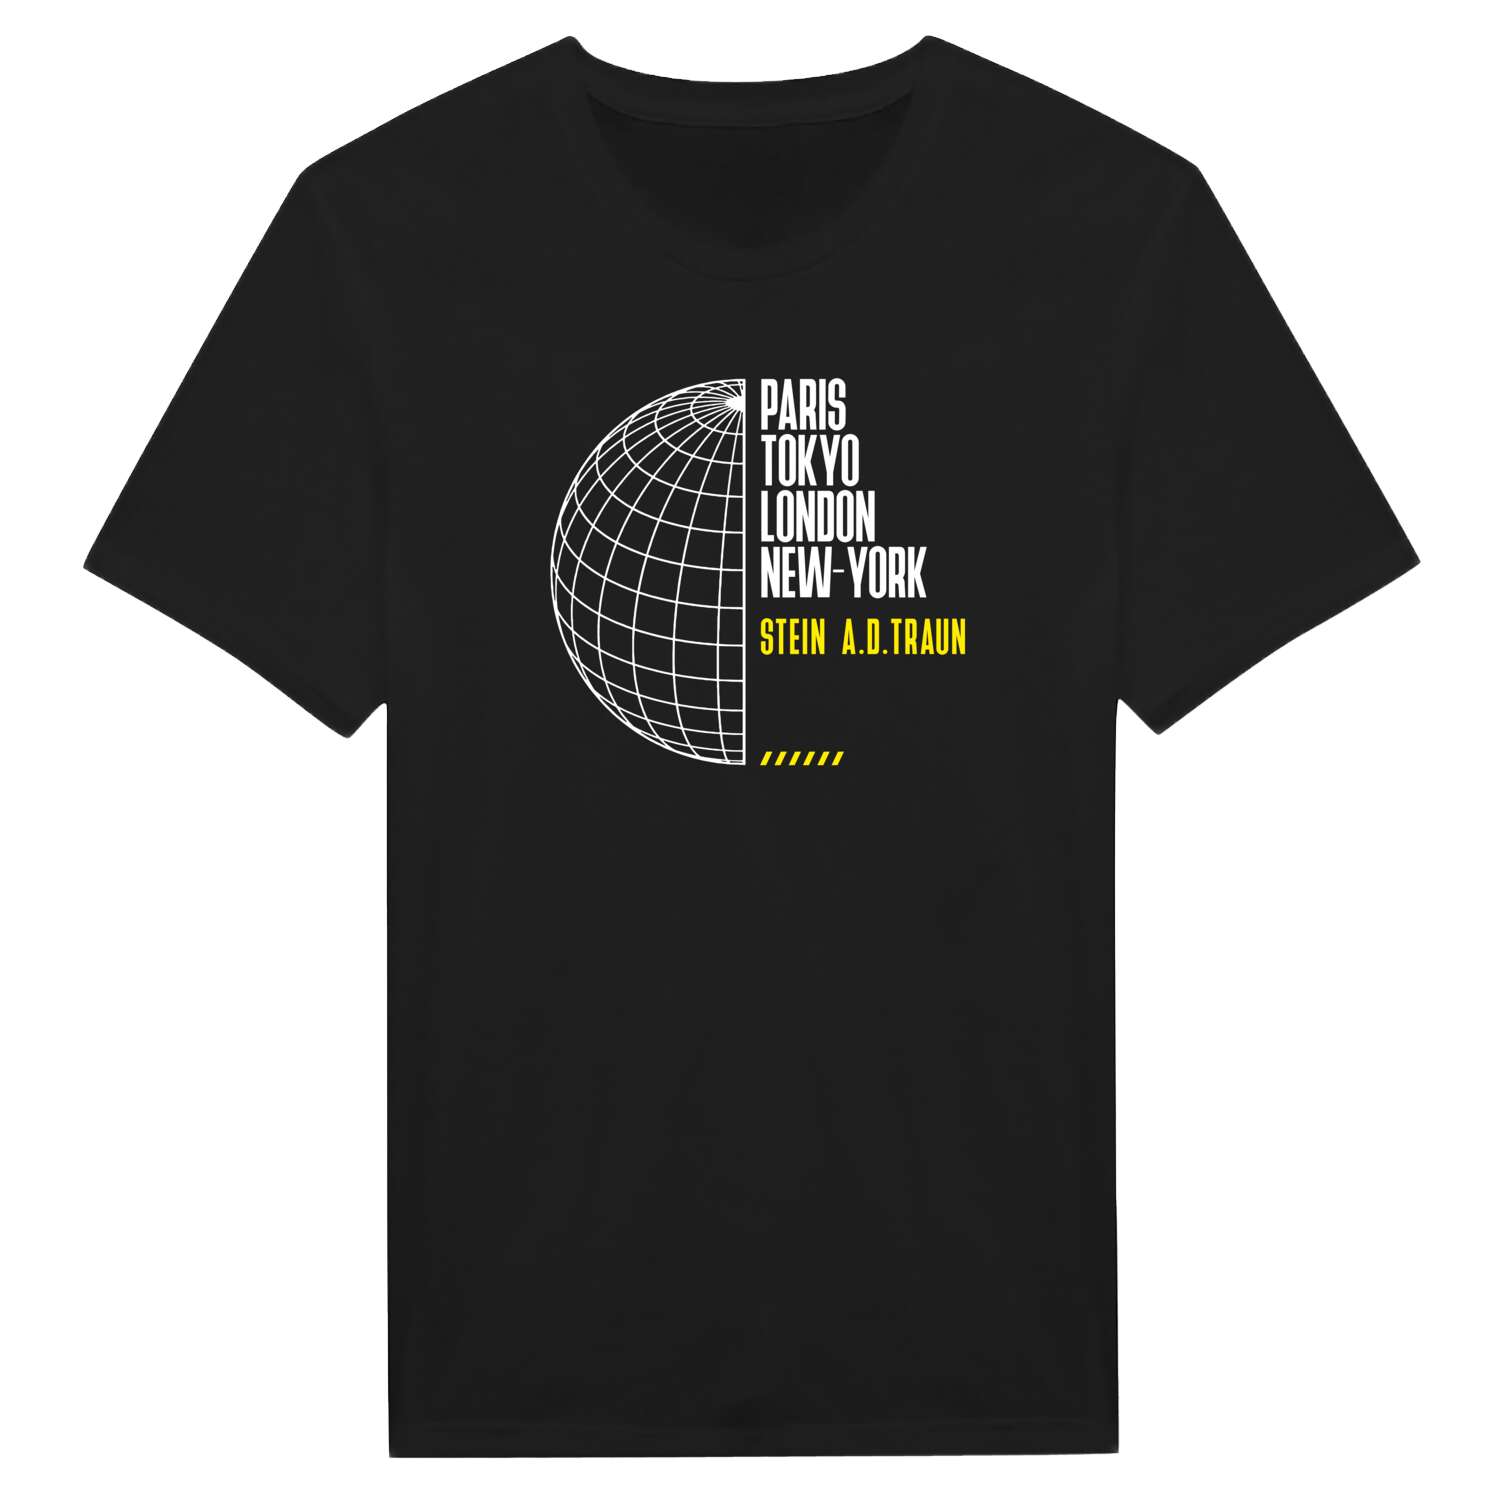 Stein a.d.Traun T-Shirt »Paris Tokyo London«